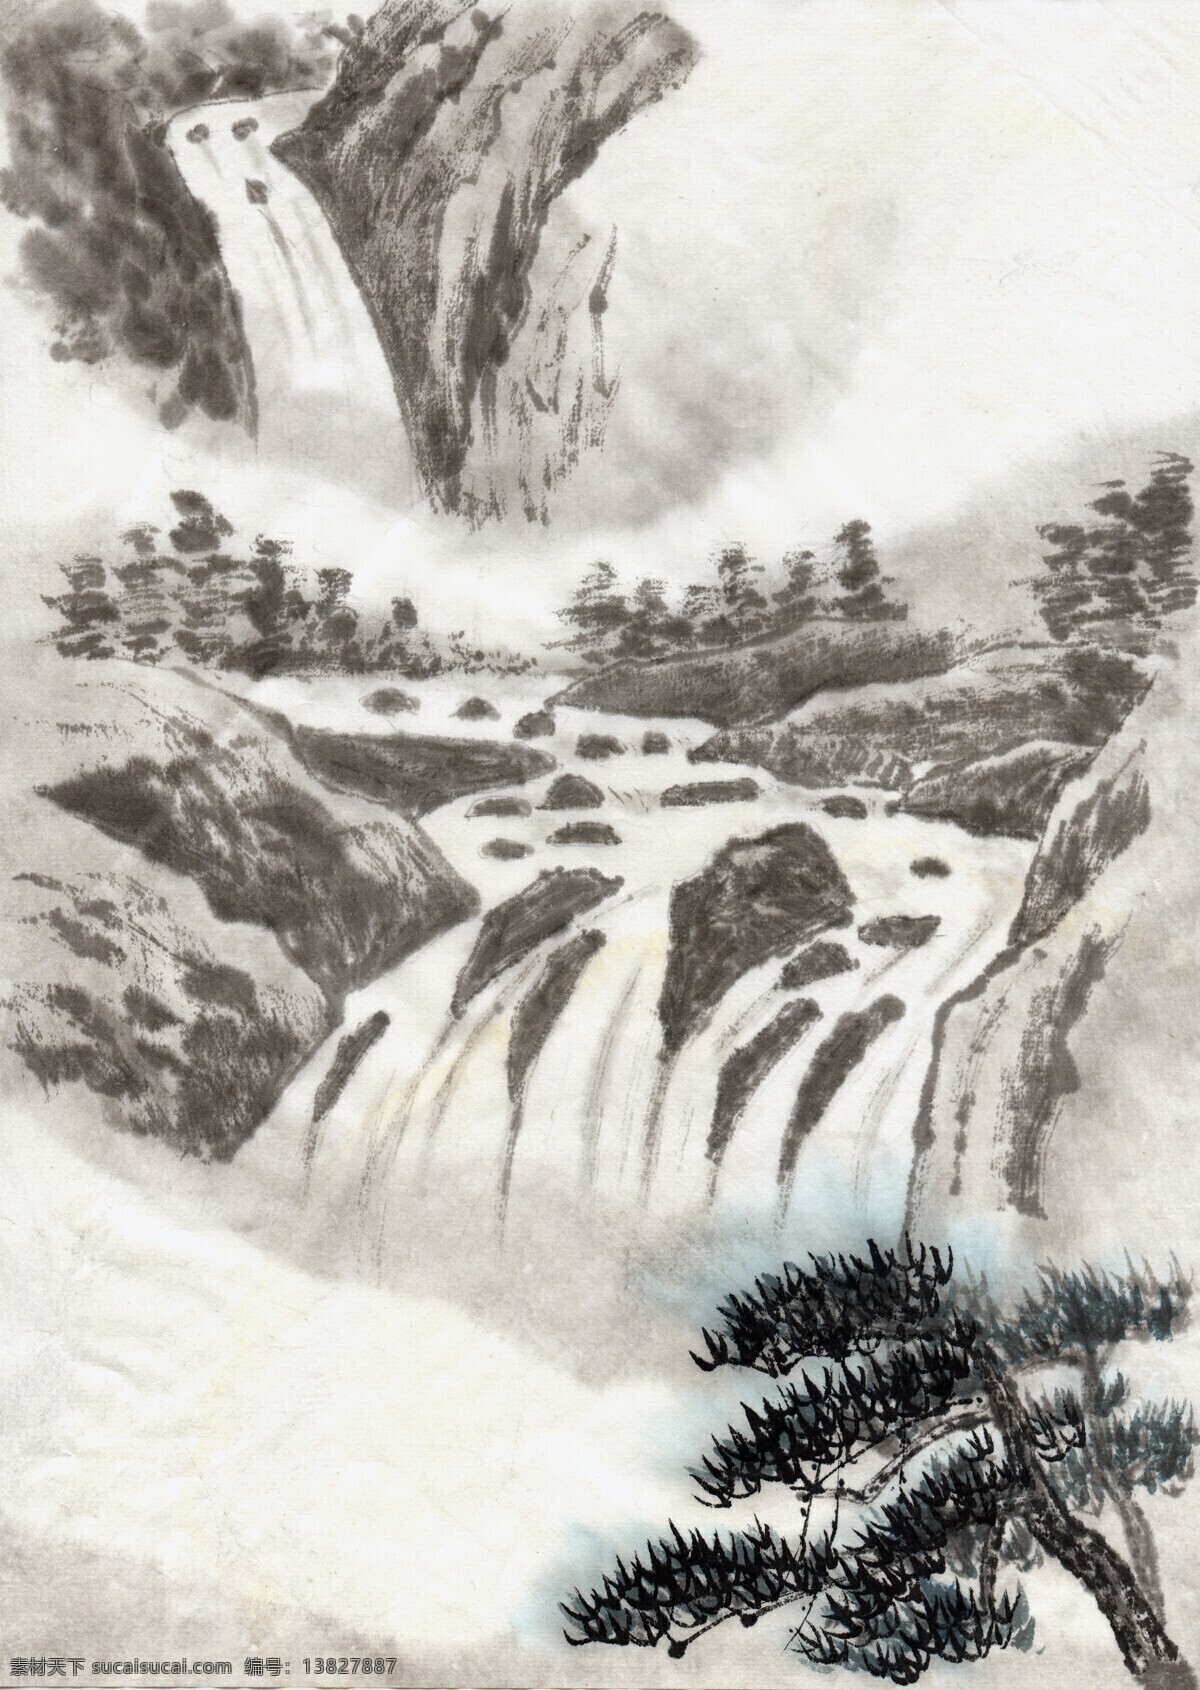 全球 首席 大百科 丹青 古色古香 国画 山水画 水墨 文化艺术